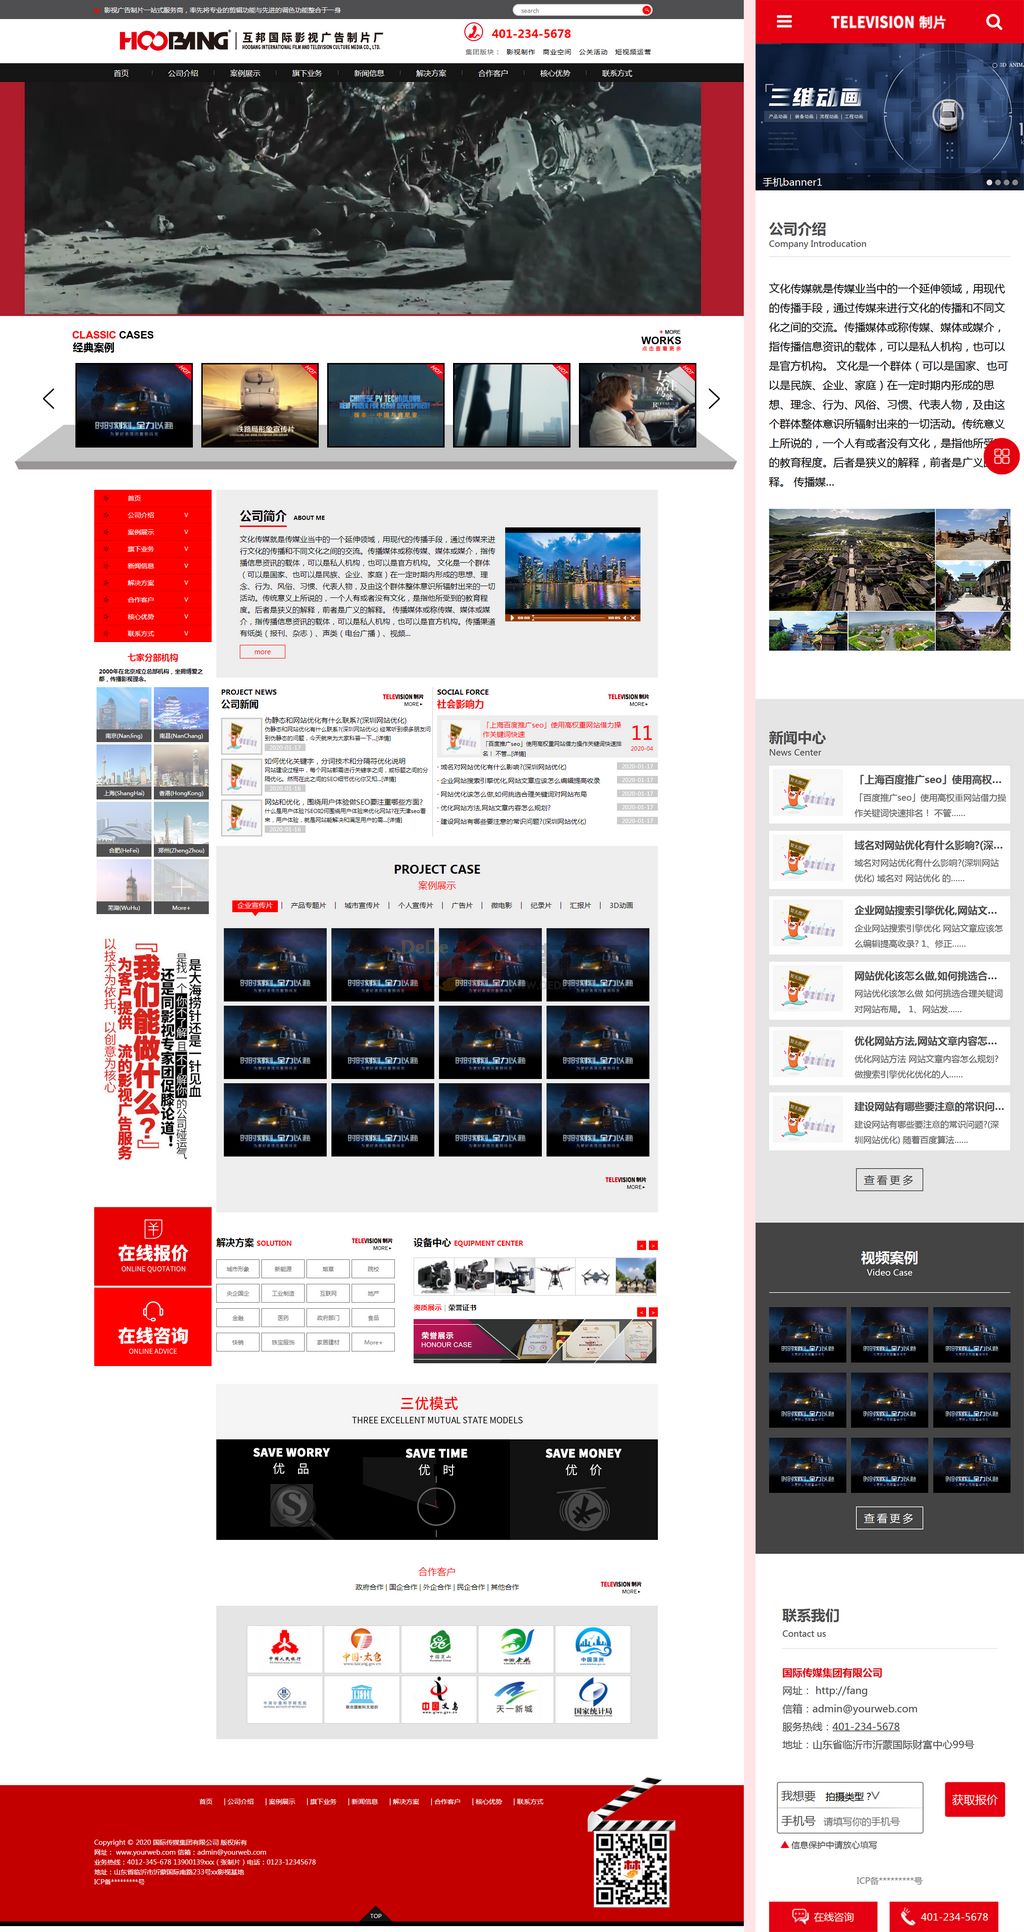 红色大气文化传媒影视媒体广告创意制作网站Wordpress企业模板(响应式手机站)截图